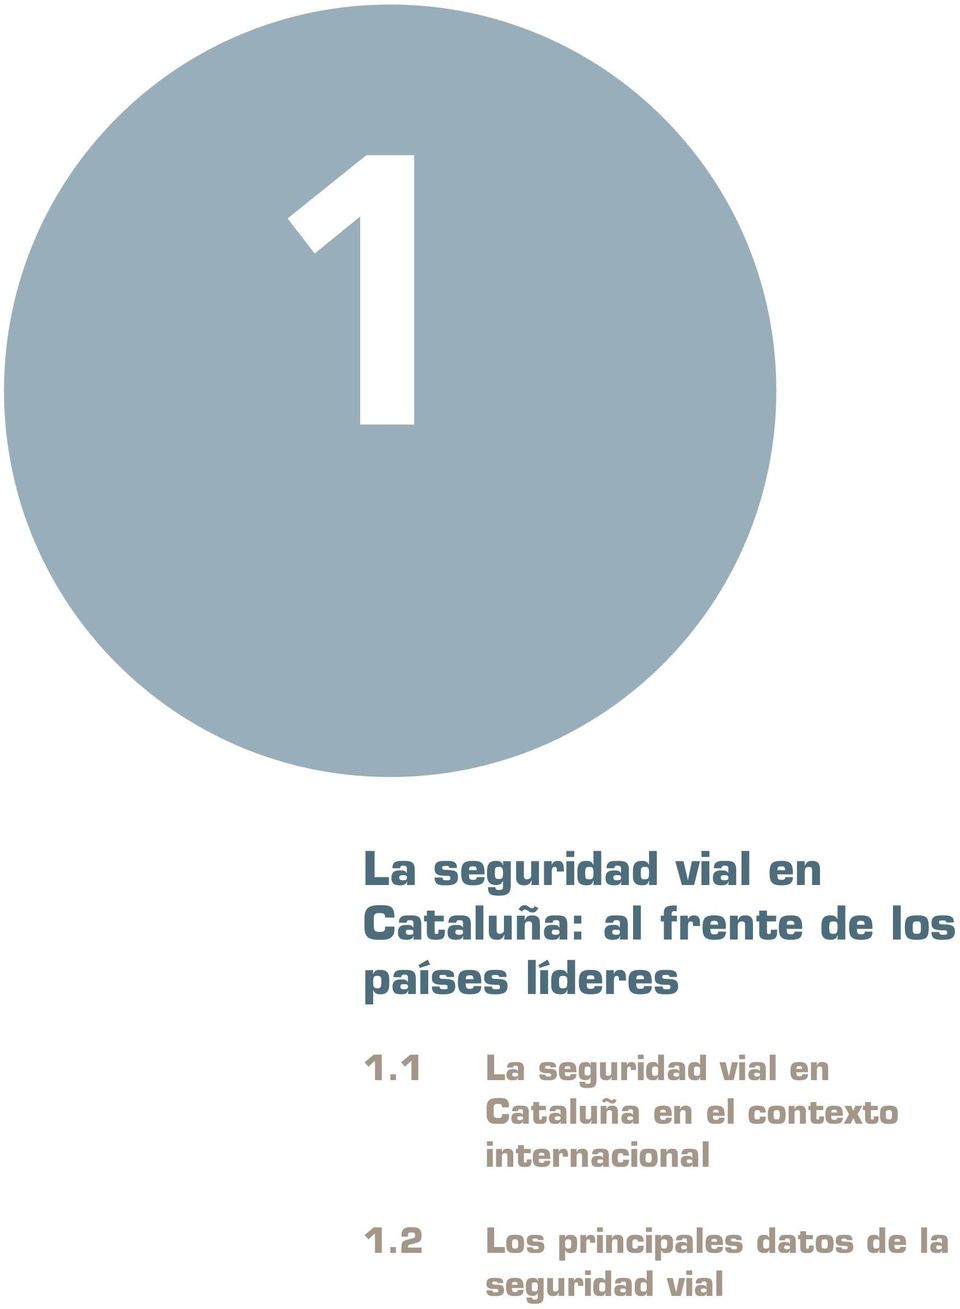 1 La seguridad vial en Cataluña en el